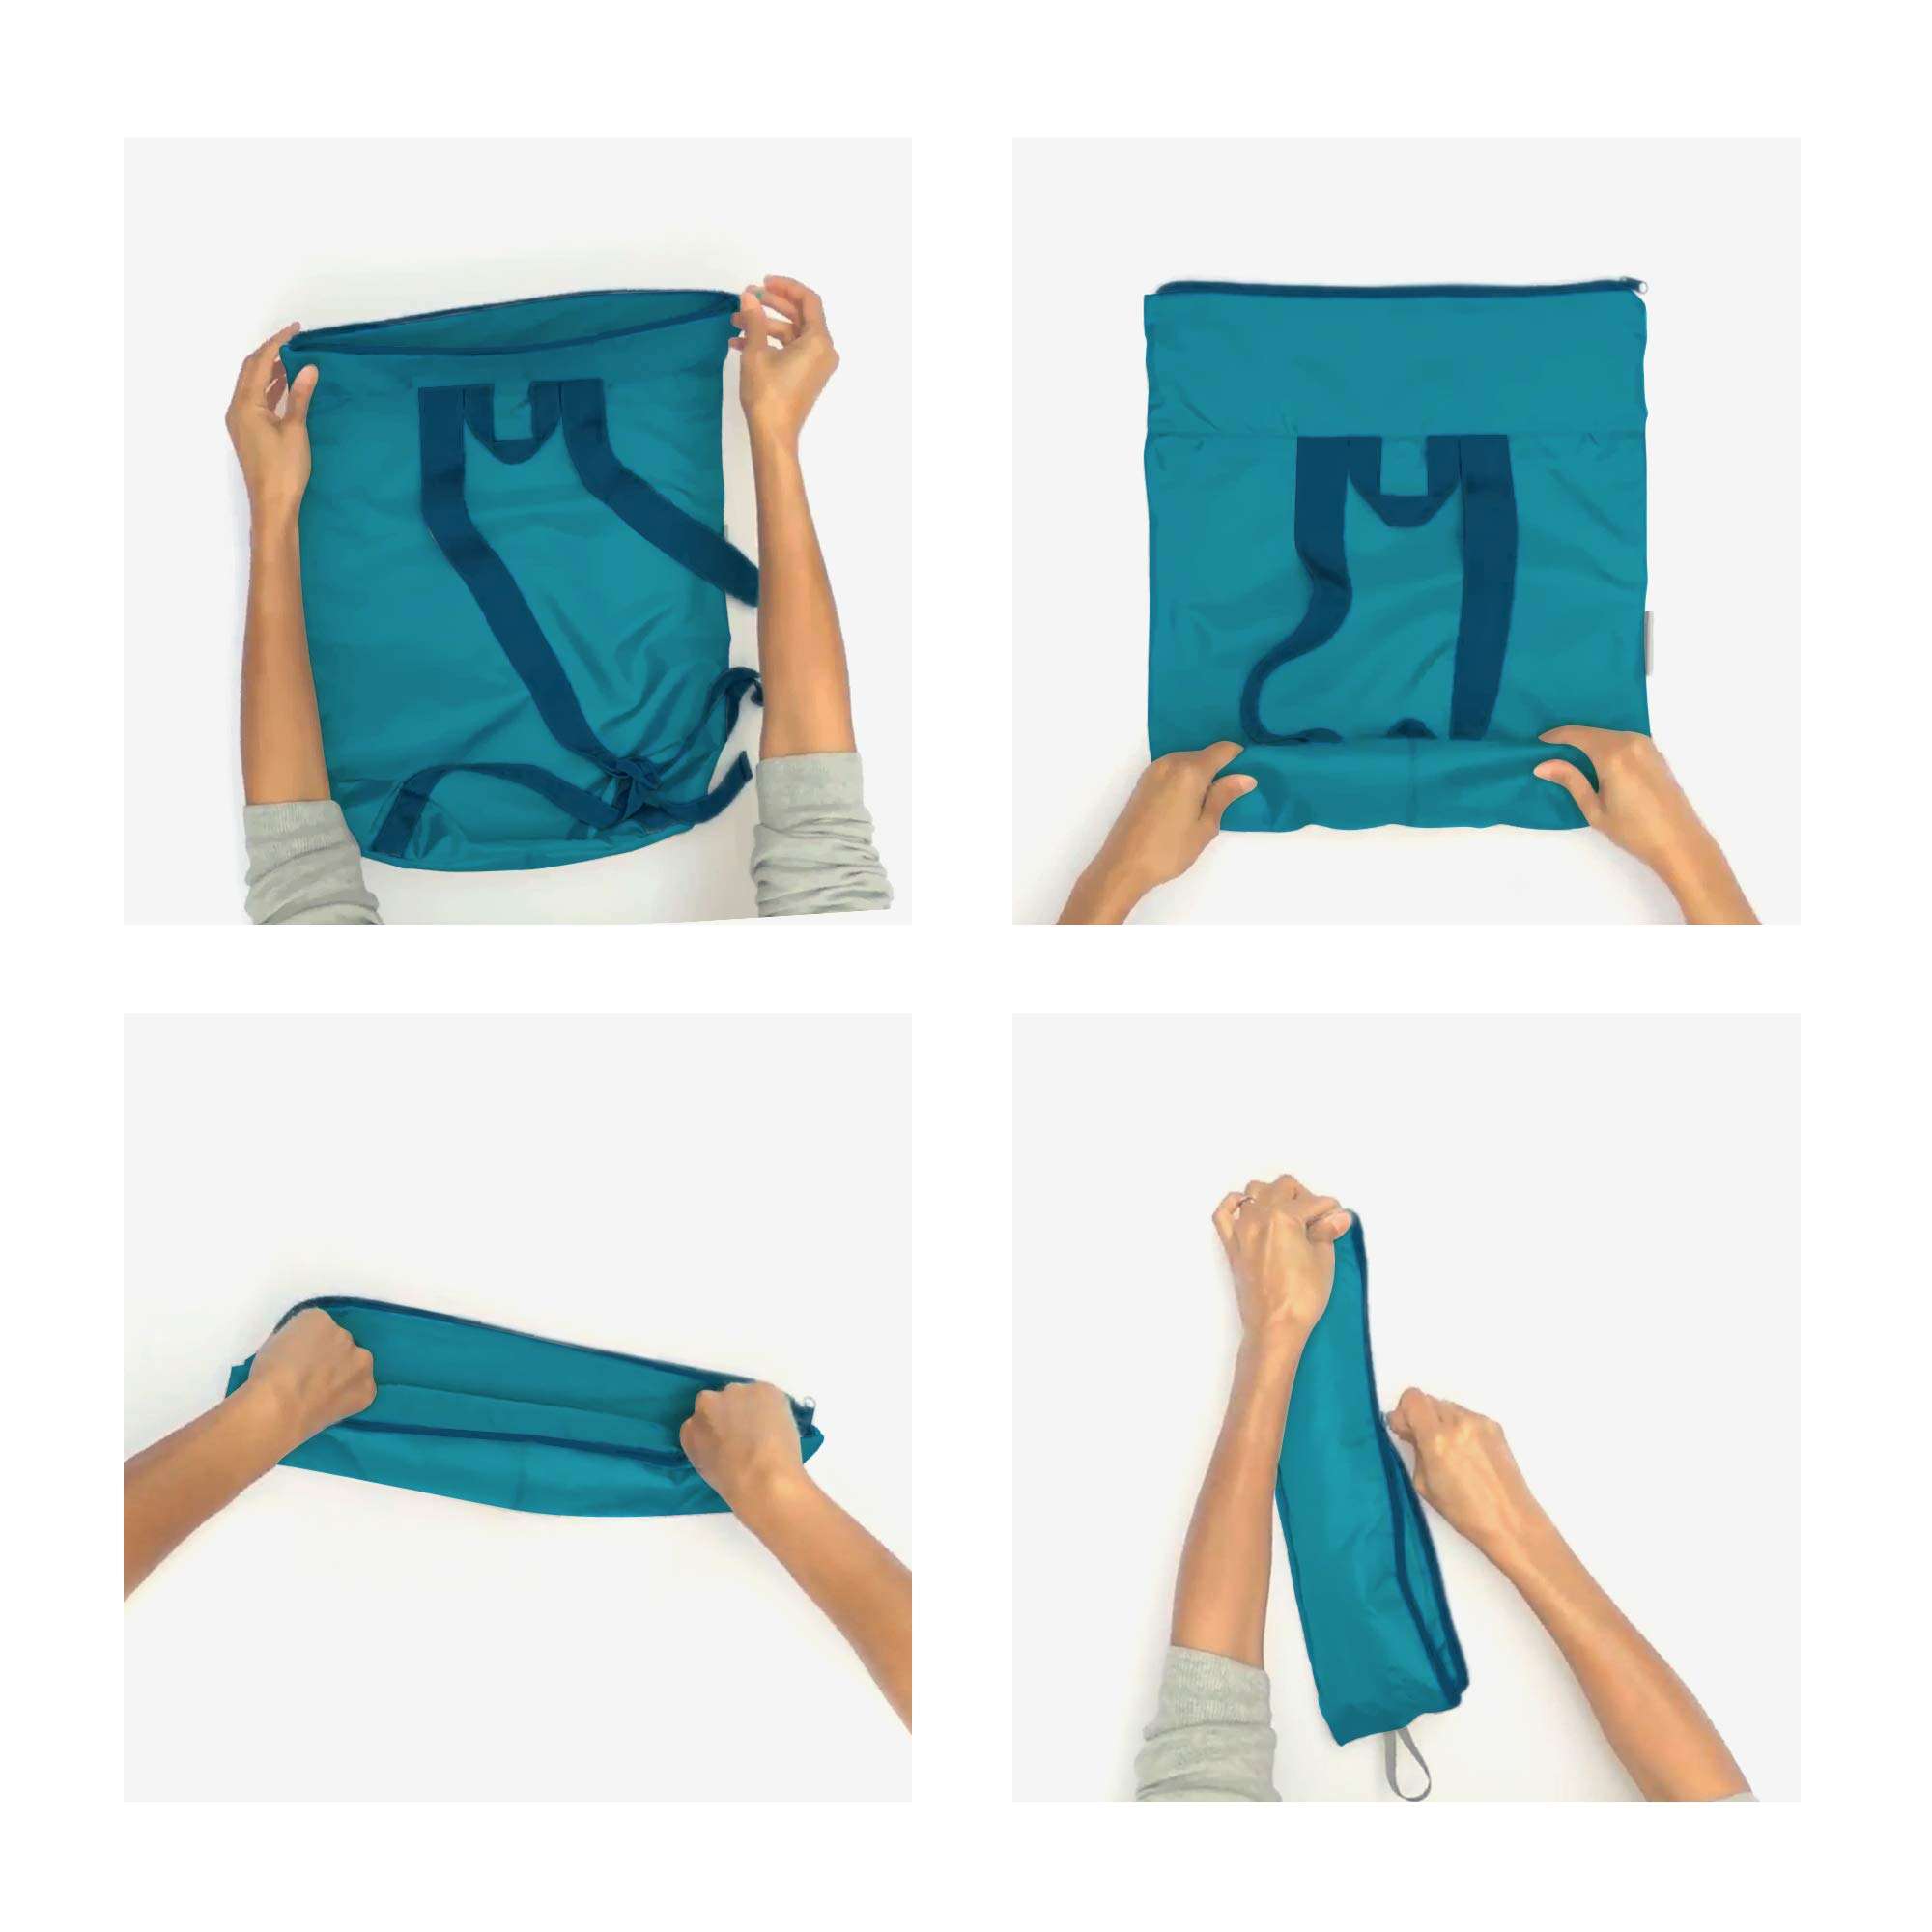 Neuer leichter faltbarer Rucksack in Pacific Blue, wiederverwendbarer Tagesrucksack, Einkaufsrucksack für Männer und Frauen